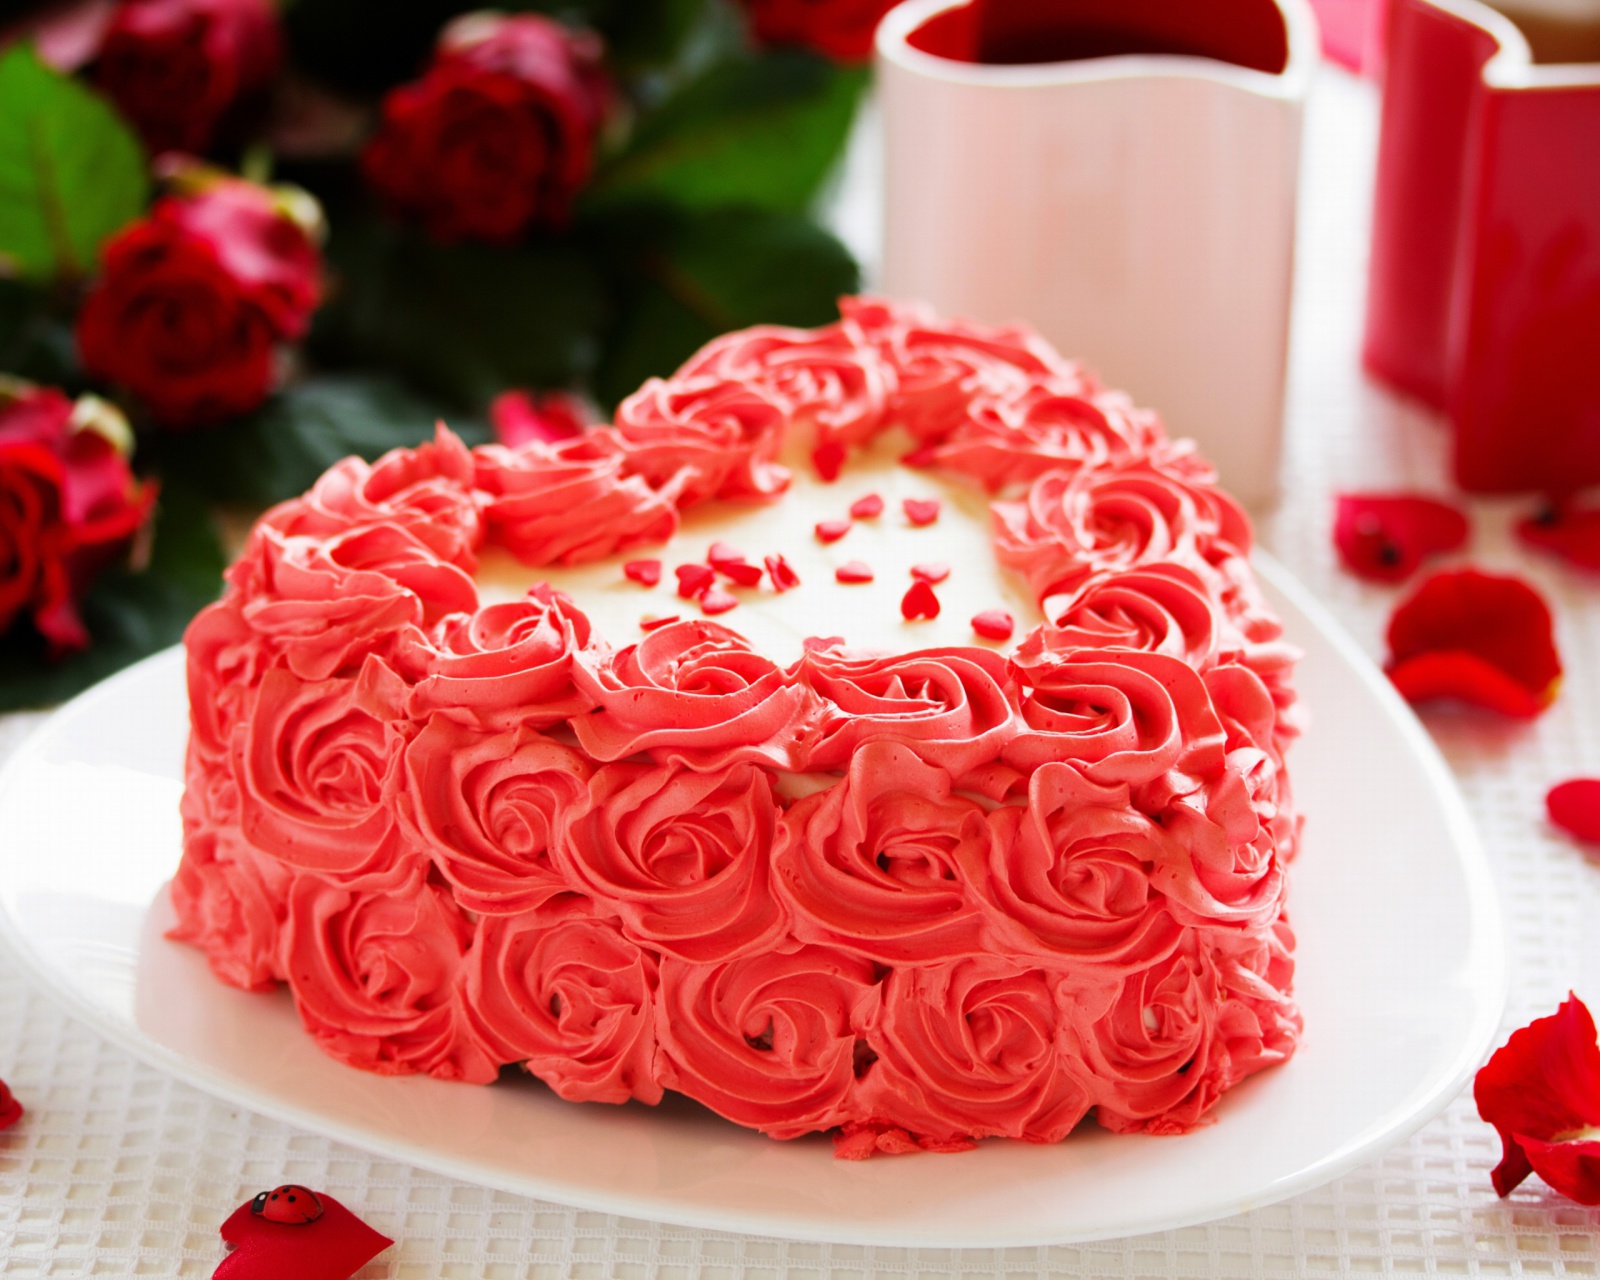 Das Sweet Red Heart Cake Wallpaper 1600x1280